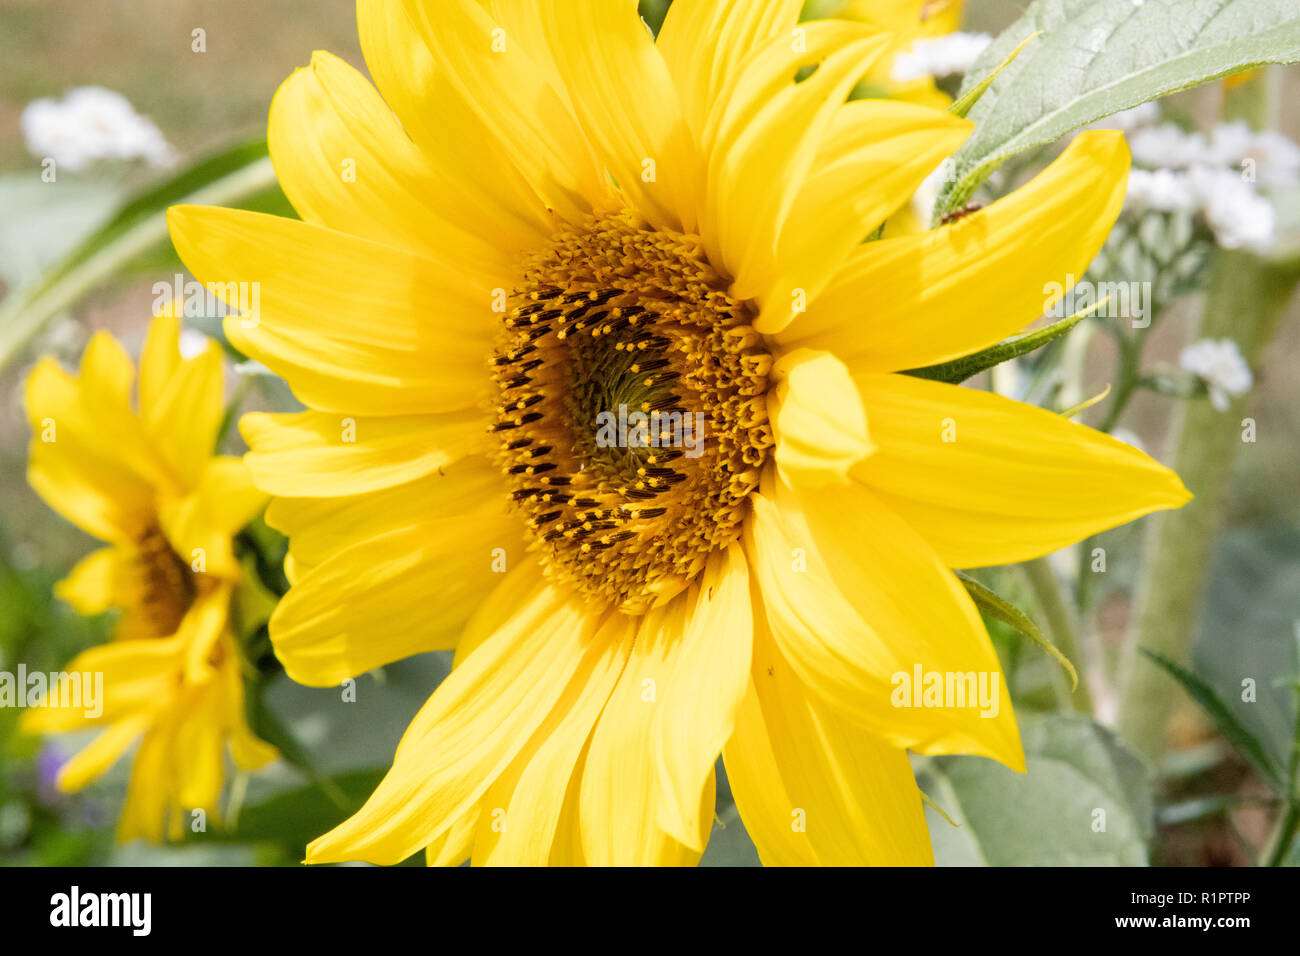 Yellow sunflower close up Stock Photo